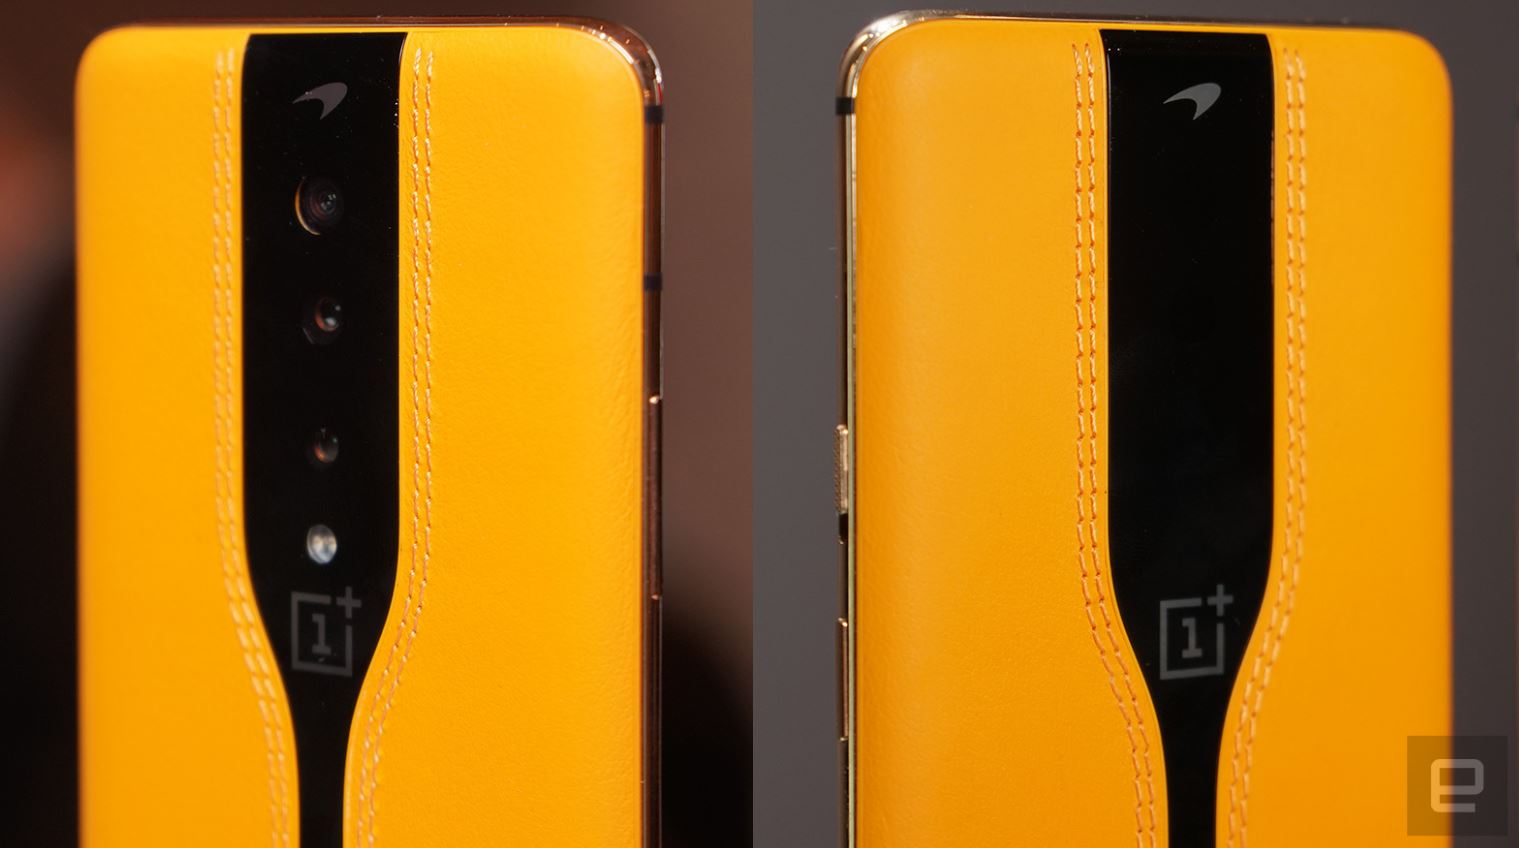 OnePlus Concept One smarttelefon kommer med usynlige kameraer